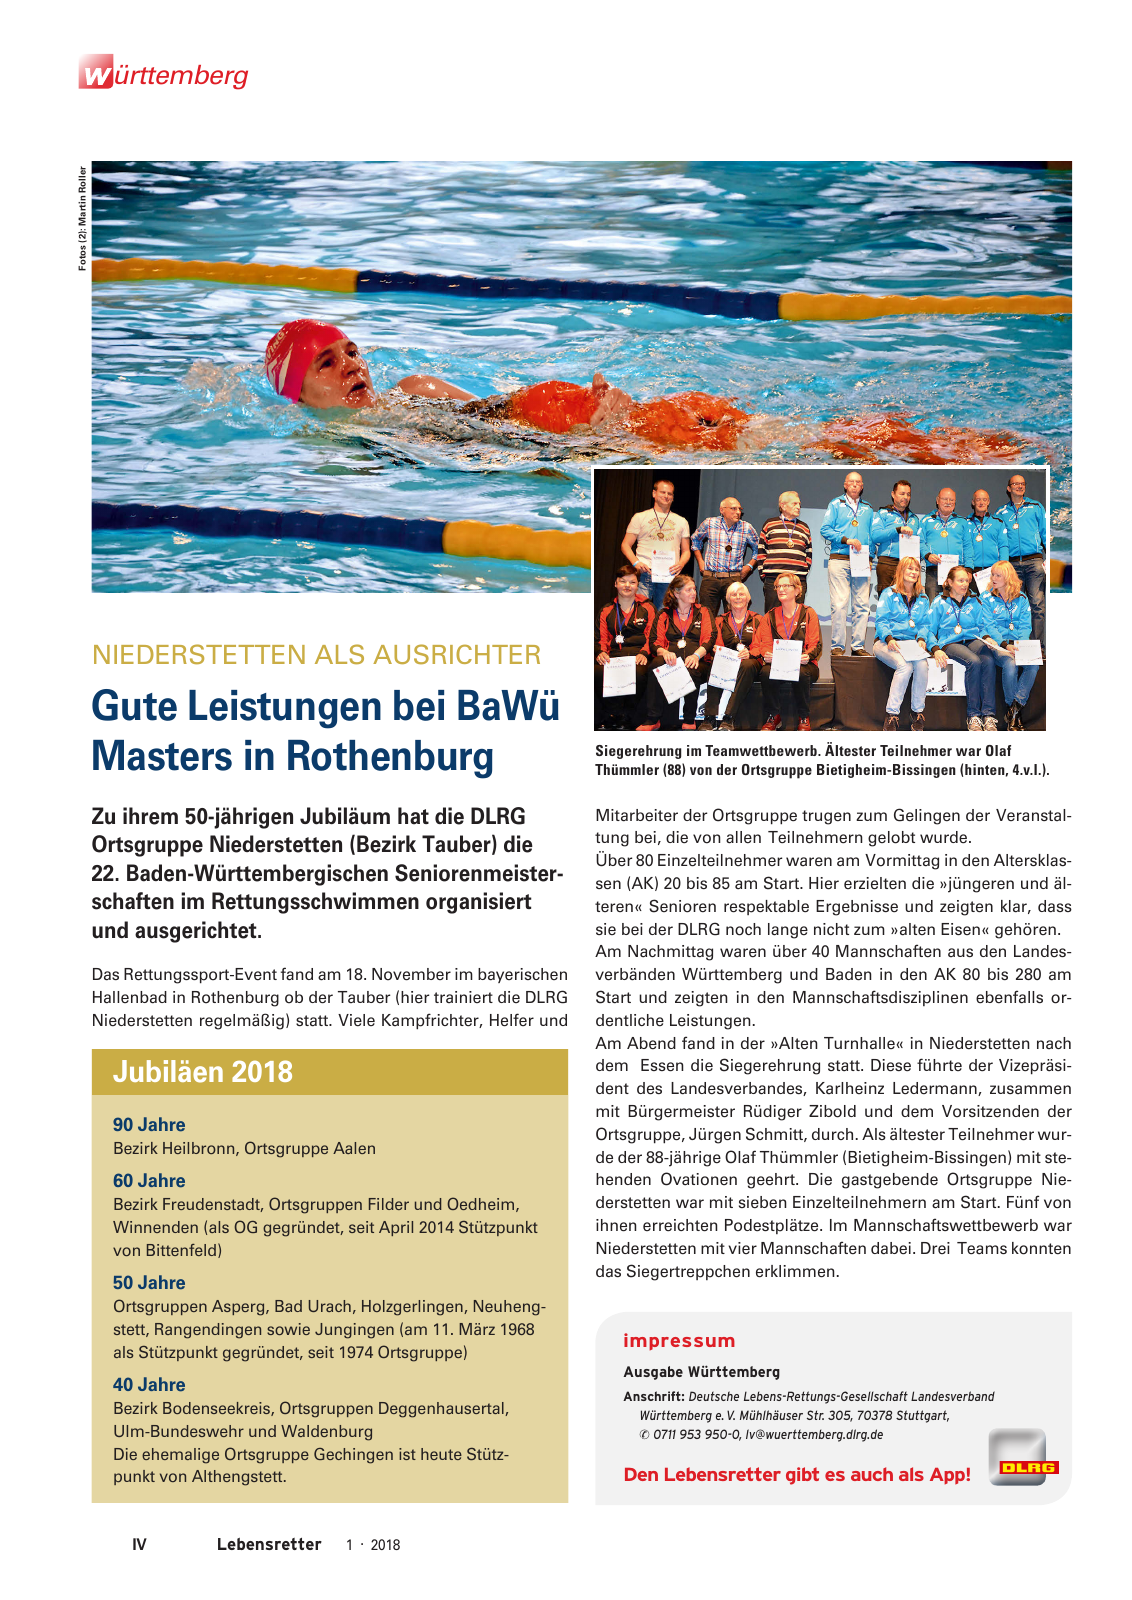 Vorschau Lebensretter 1/2018 - Regionalausgabe Württemberg Seite 6